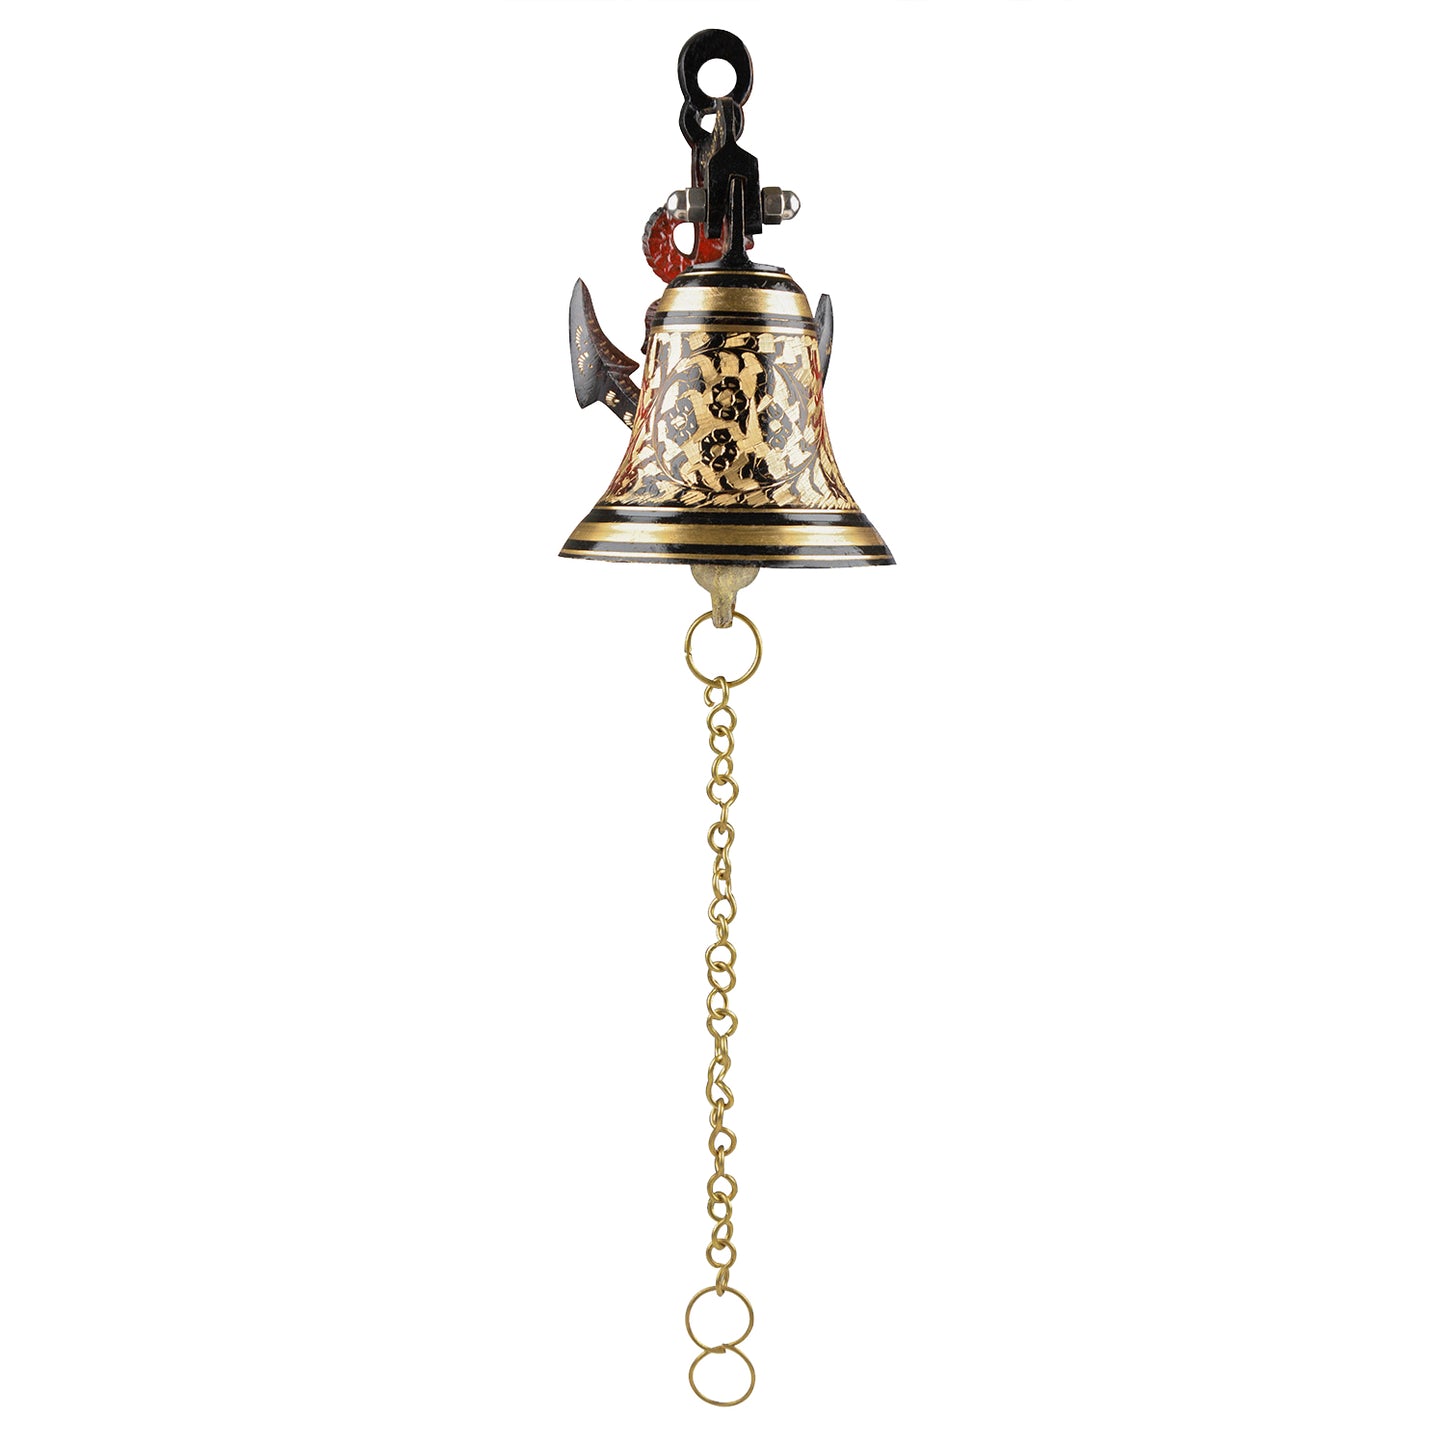 Brass Hanging Door Bell with Anchor Bracket (Diameter – 12.5 cm, Height - 22 cm, 1200 gm)